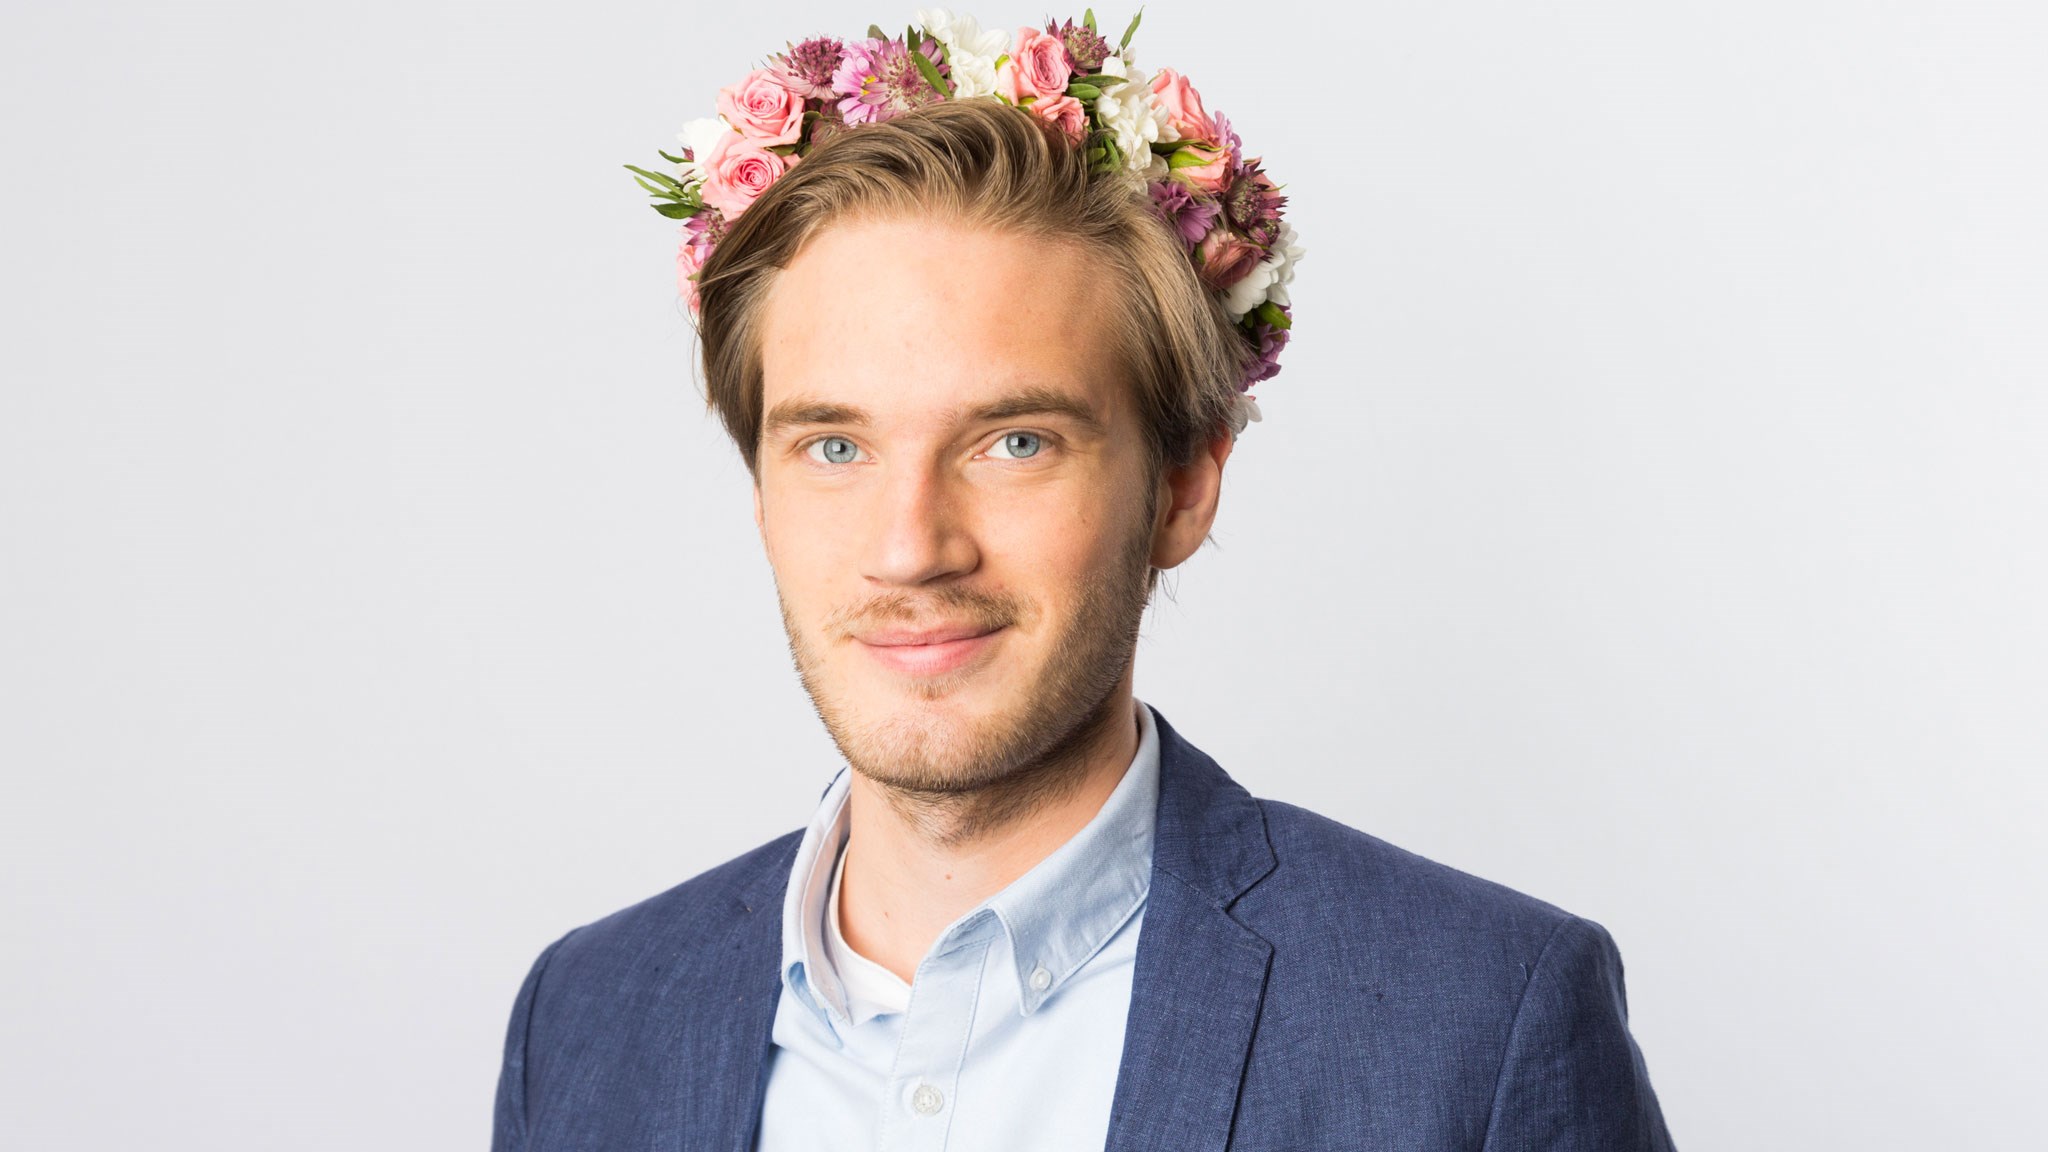 Felix Kjellberg Flower Crown , HD Wallpaper & Backgrounds